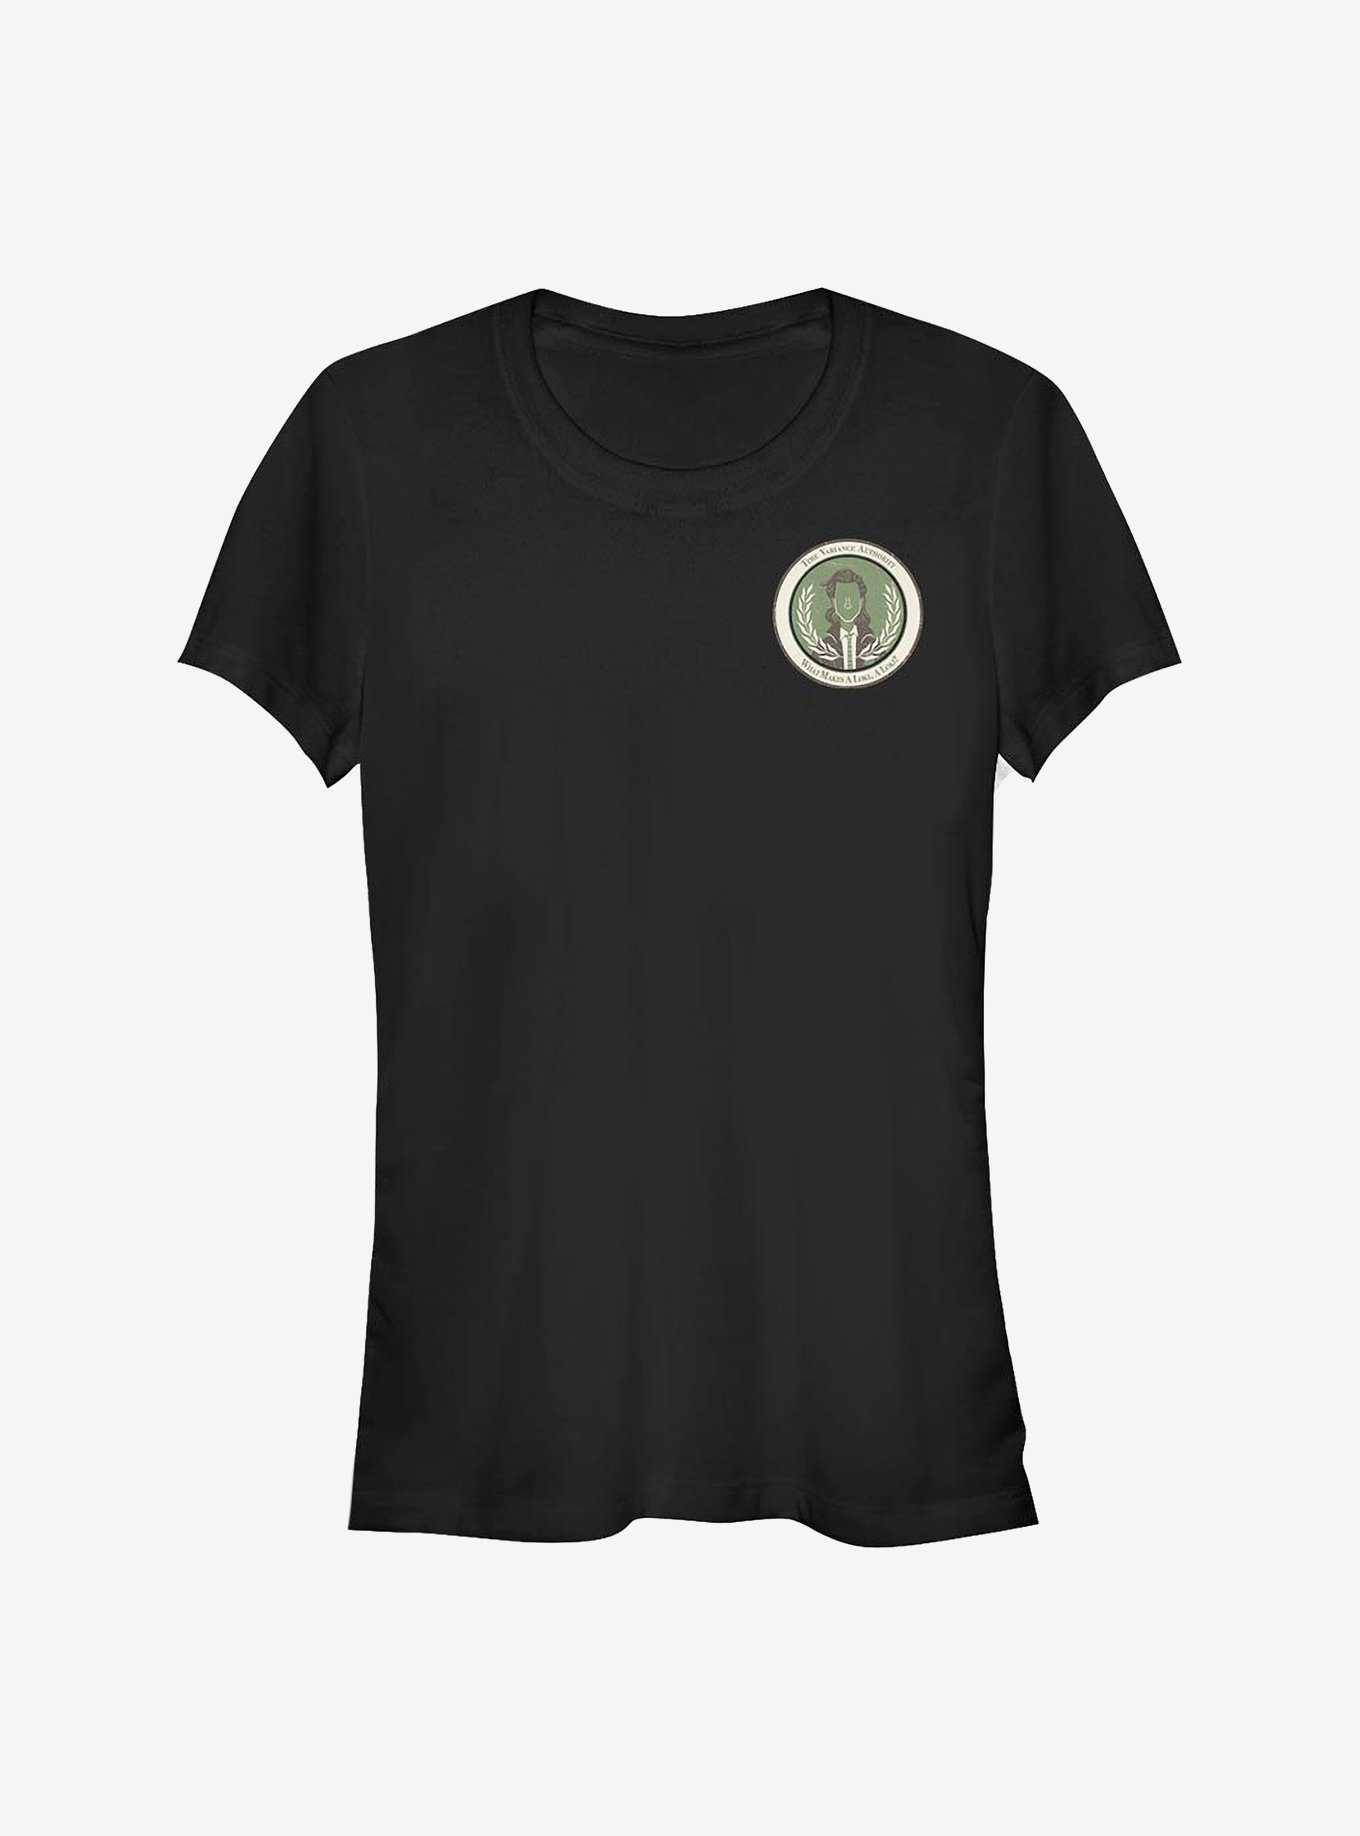 Marvel Loki Badge Girls T-Shirt, , hi-res